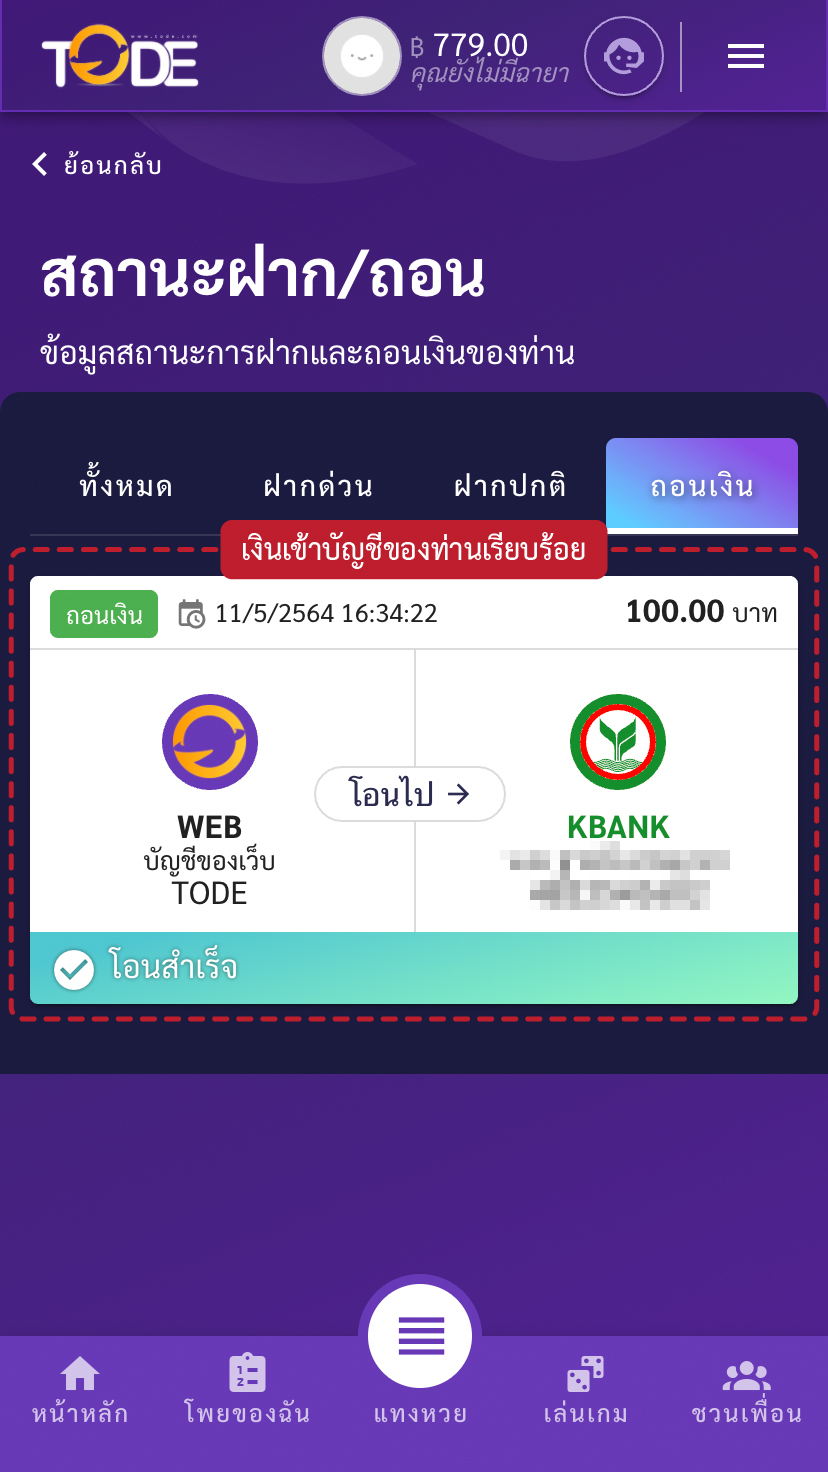 ขั้นตอนวิธีการถอนเงินเว็บโต๊ดเว็บแทงหวยอันดับ1ของไทยสูงสุดบาทละ1200